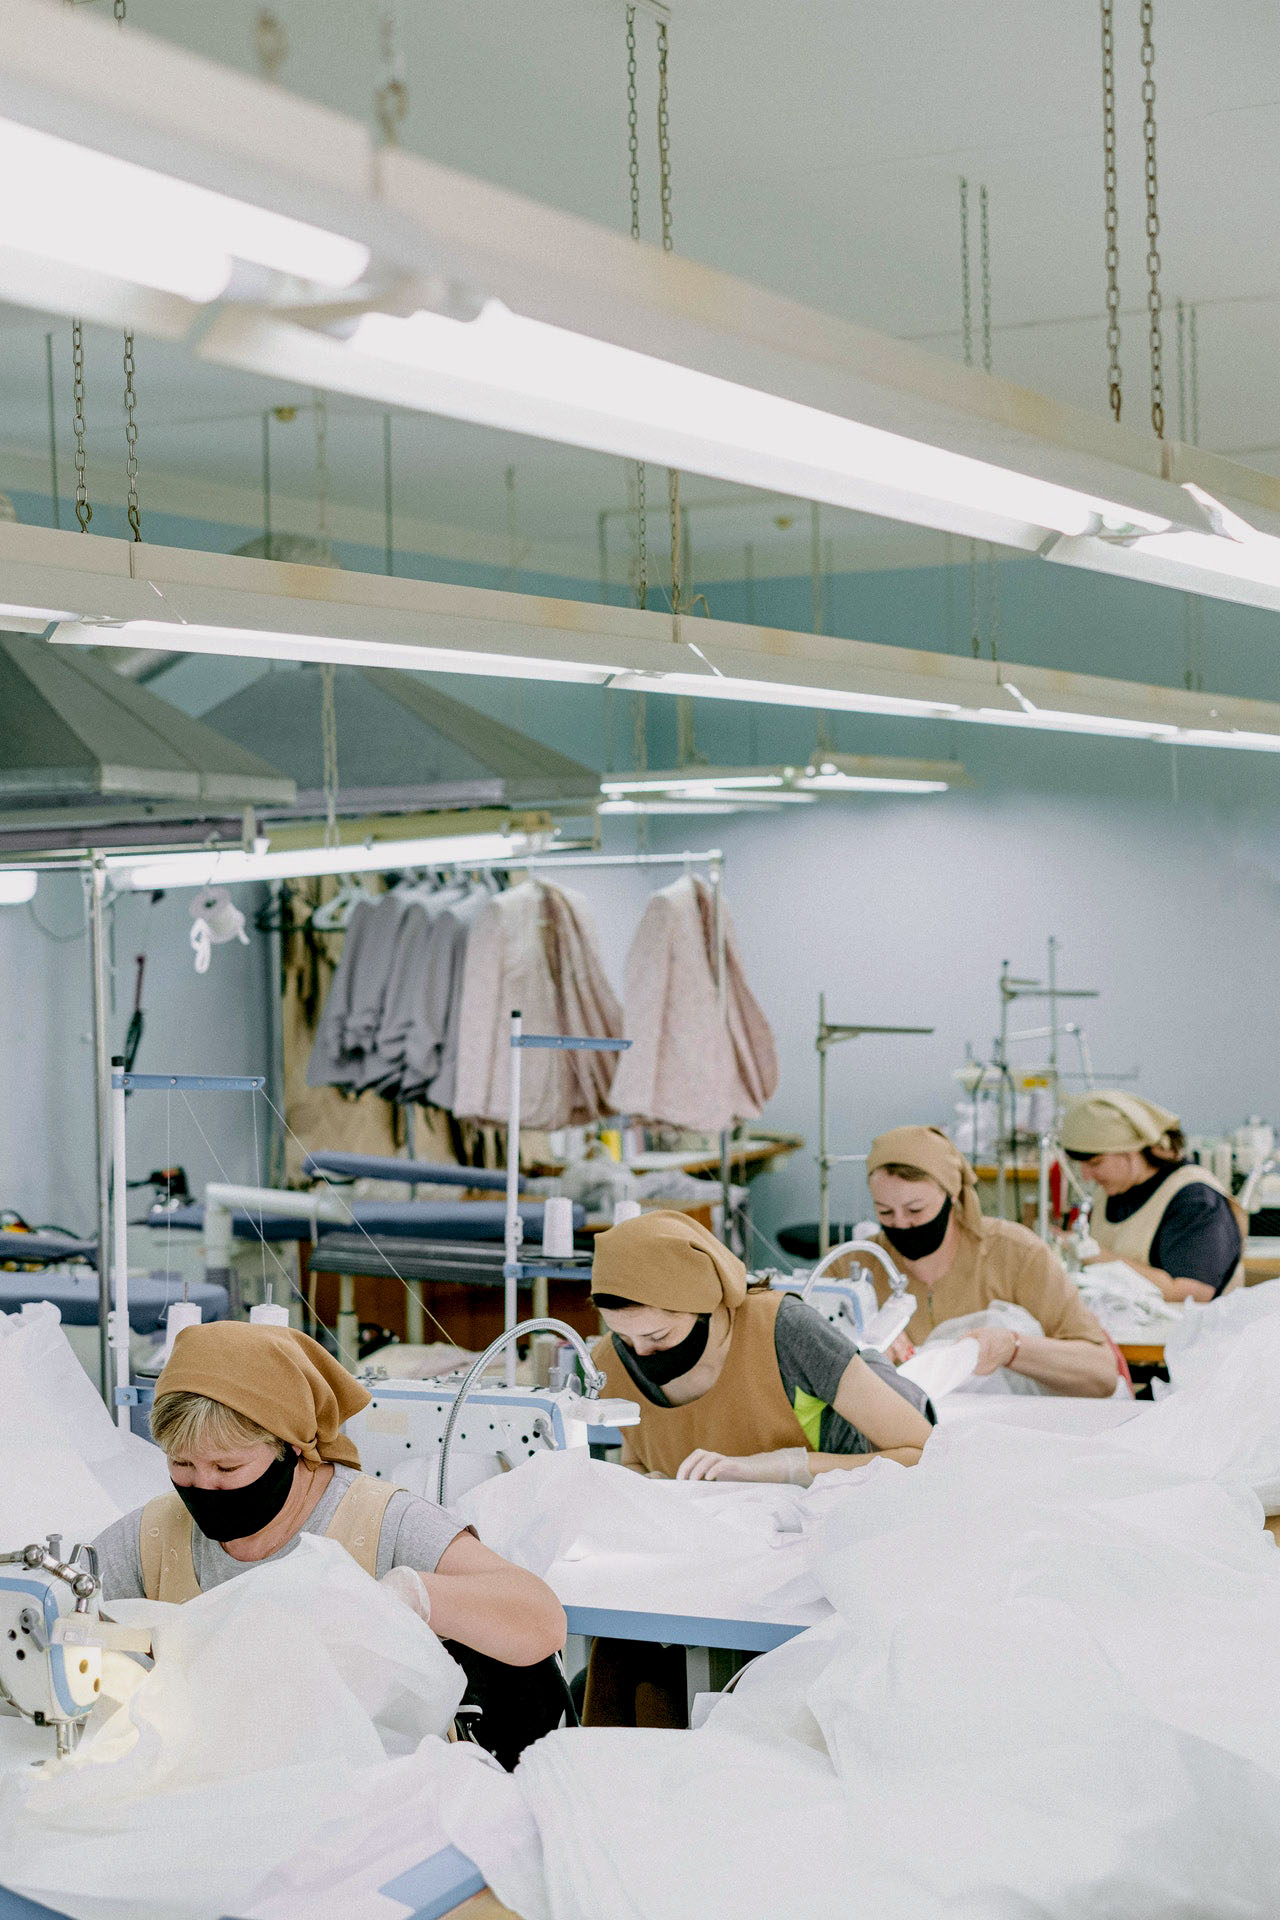 Dans un atelier, des femmes cousent sur leurs machines